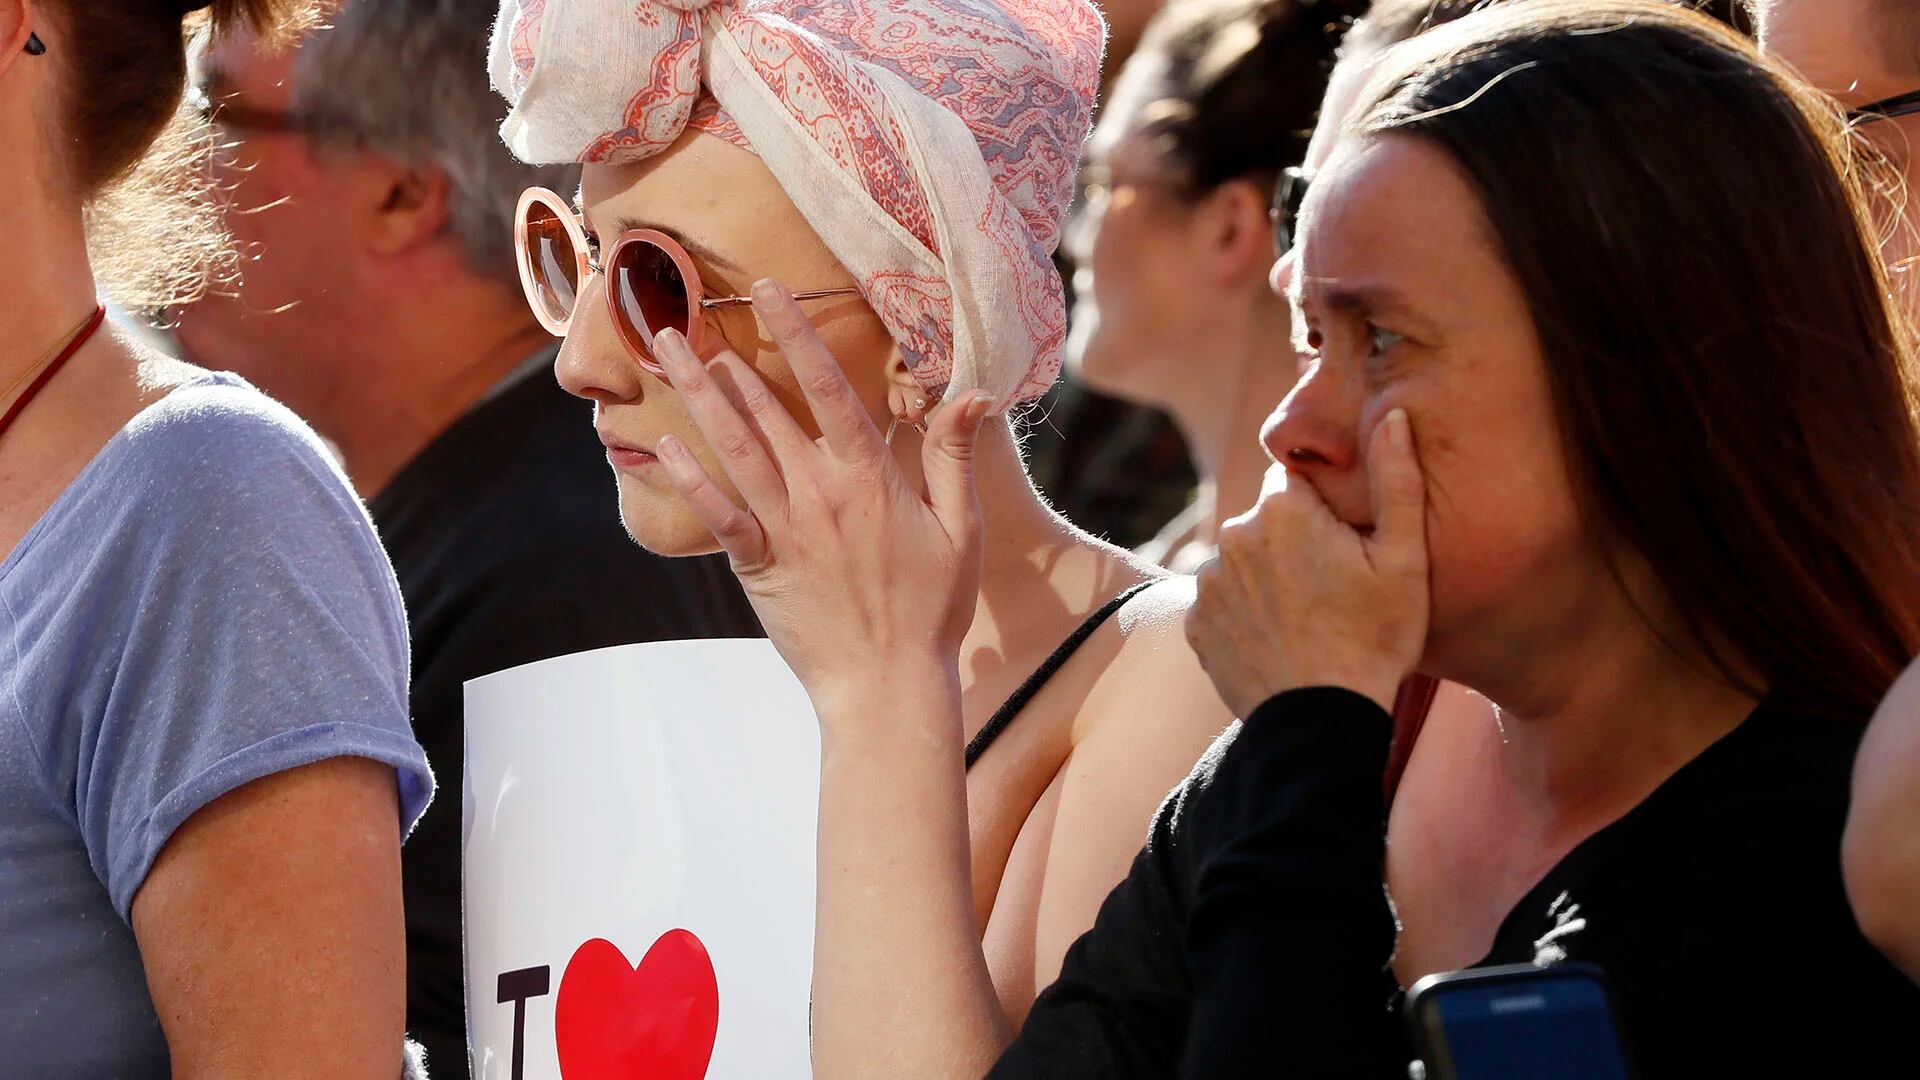 Llanto y conmoción en los rostros de dos mujeres durante la multitudinaria vigilia (AP)